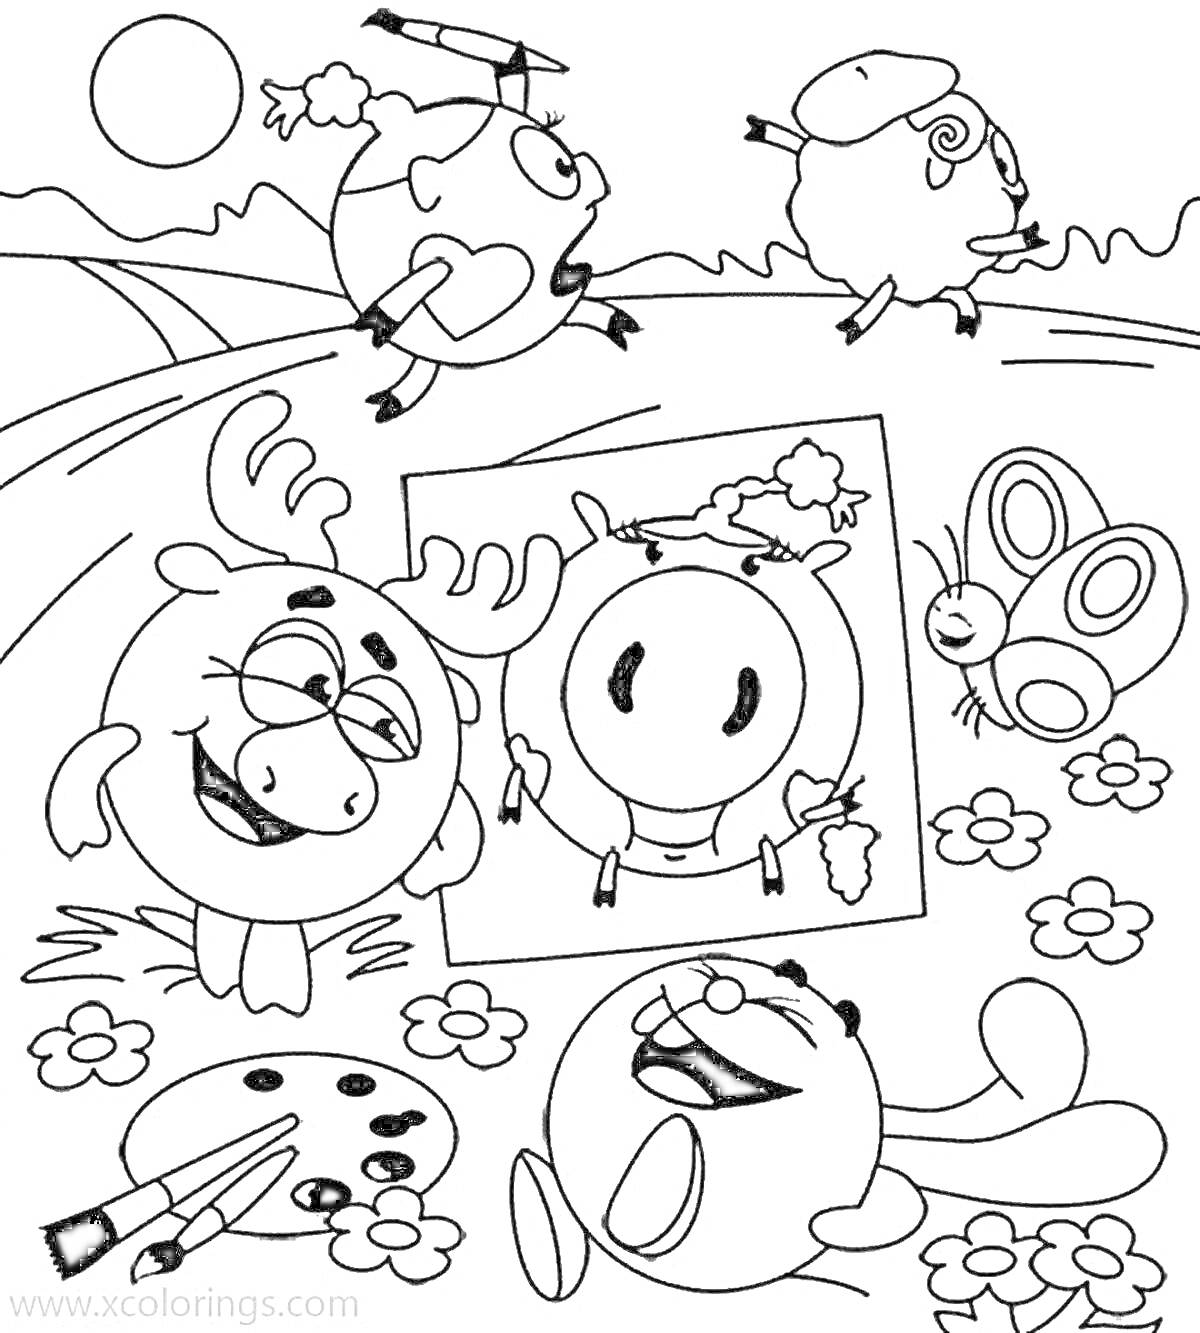 Раскраска Раскраска с персонажами Смешариков, рисующими картину в поле с цветами